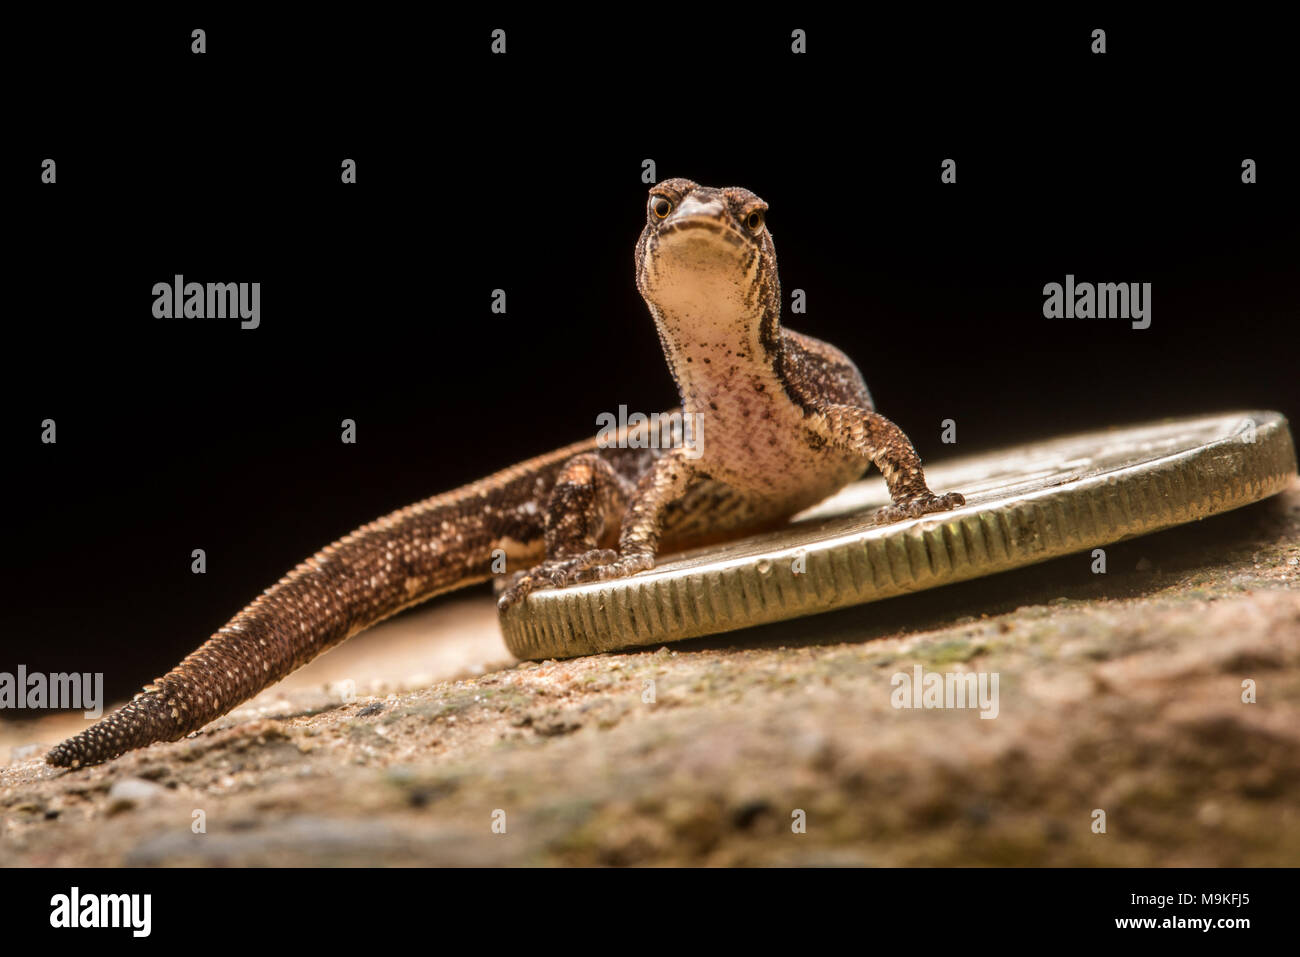 Dieses kleine gecko Arten (Psuedogonatodes sp.) ist unter den kleinsten Reptilienarten und wird durch eine kleine Münze in den Schatten gestellt. Stockfoto